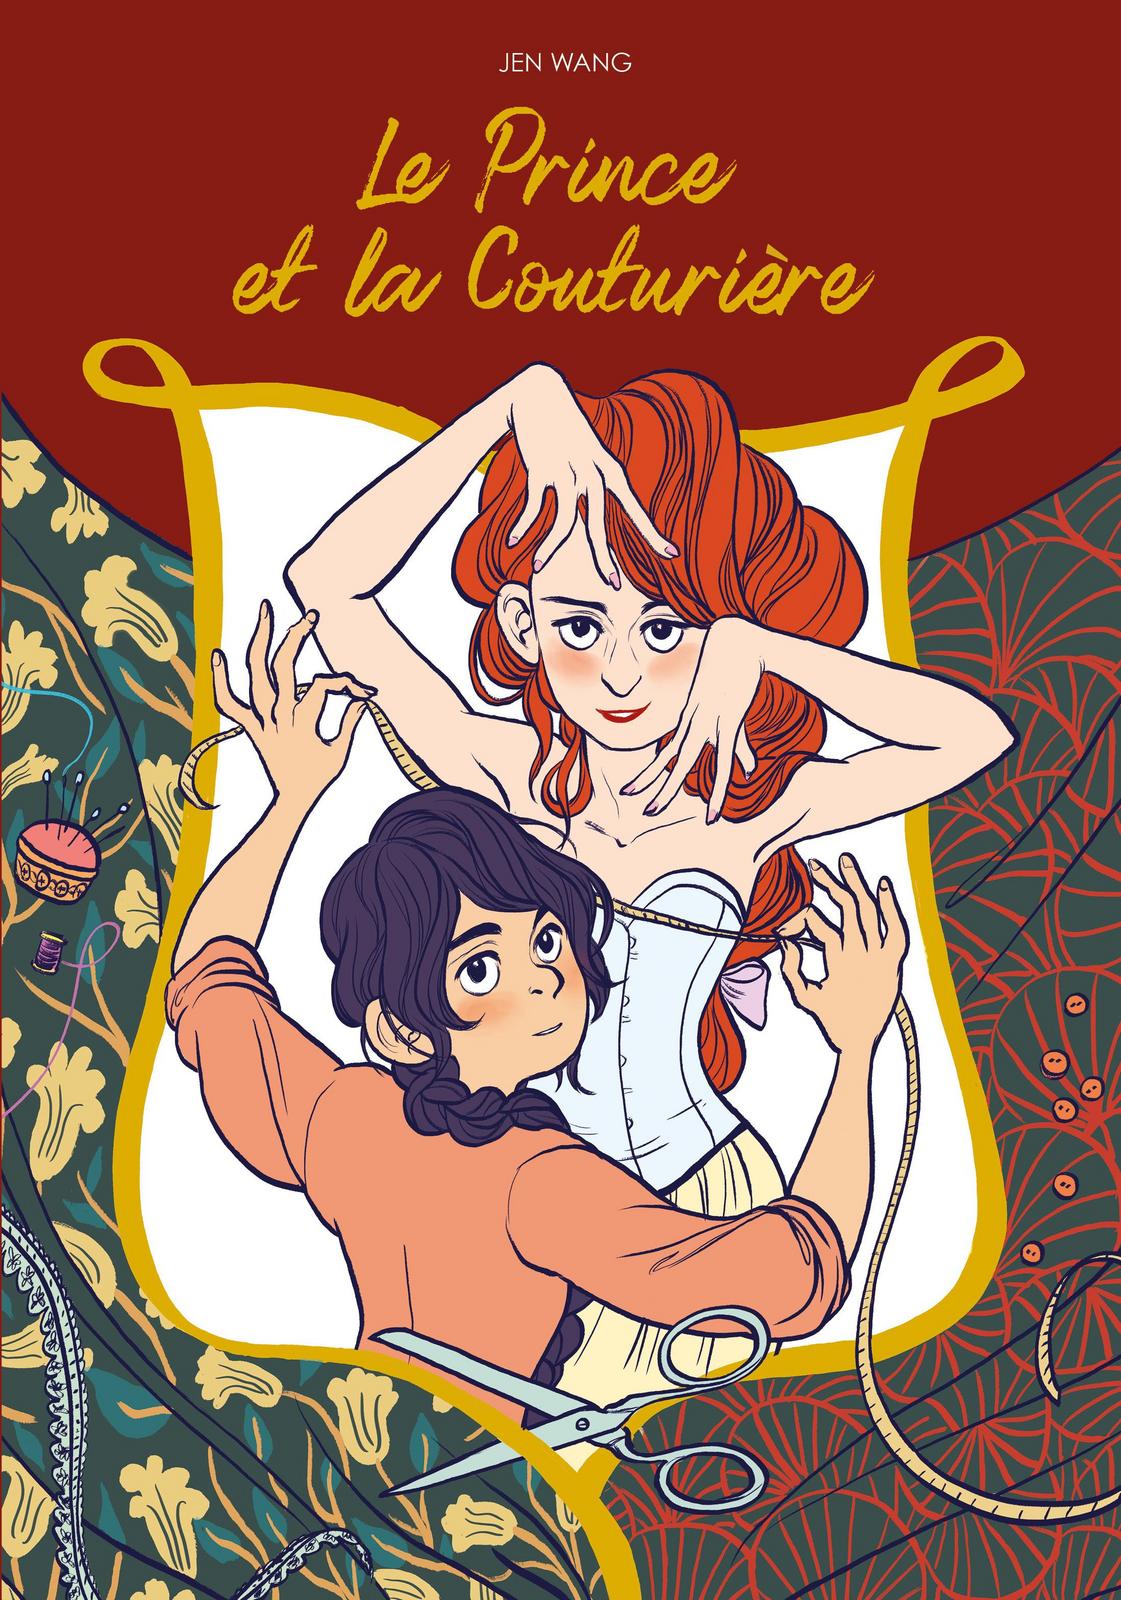 Le Prince et la Couturière (French language, 2018)